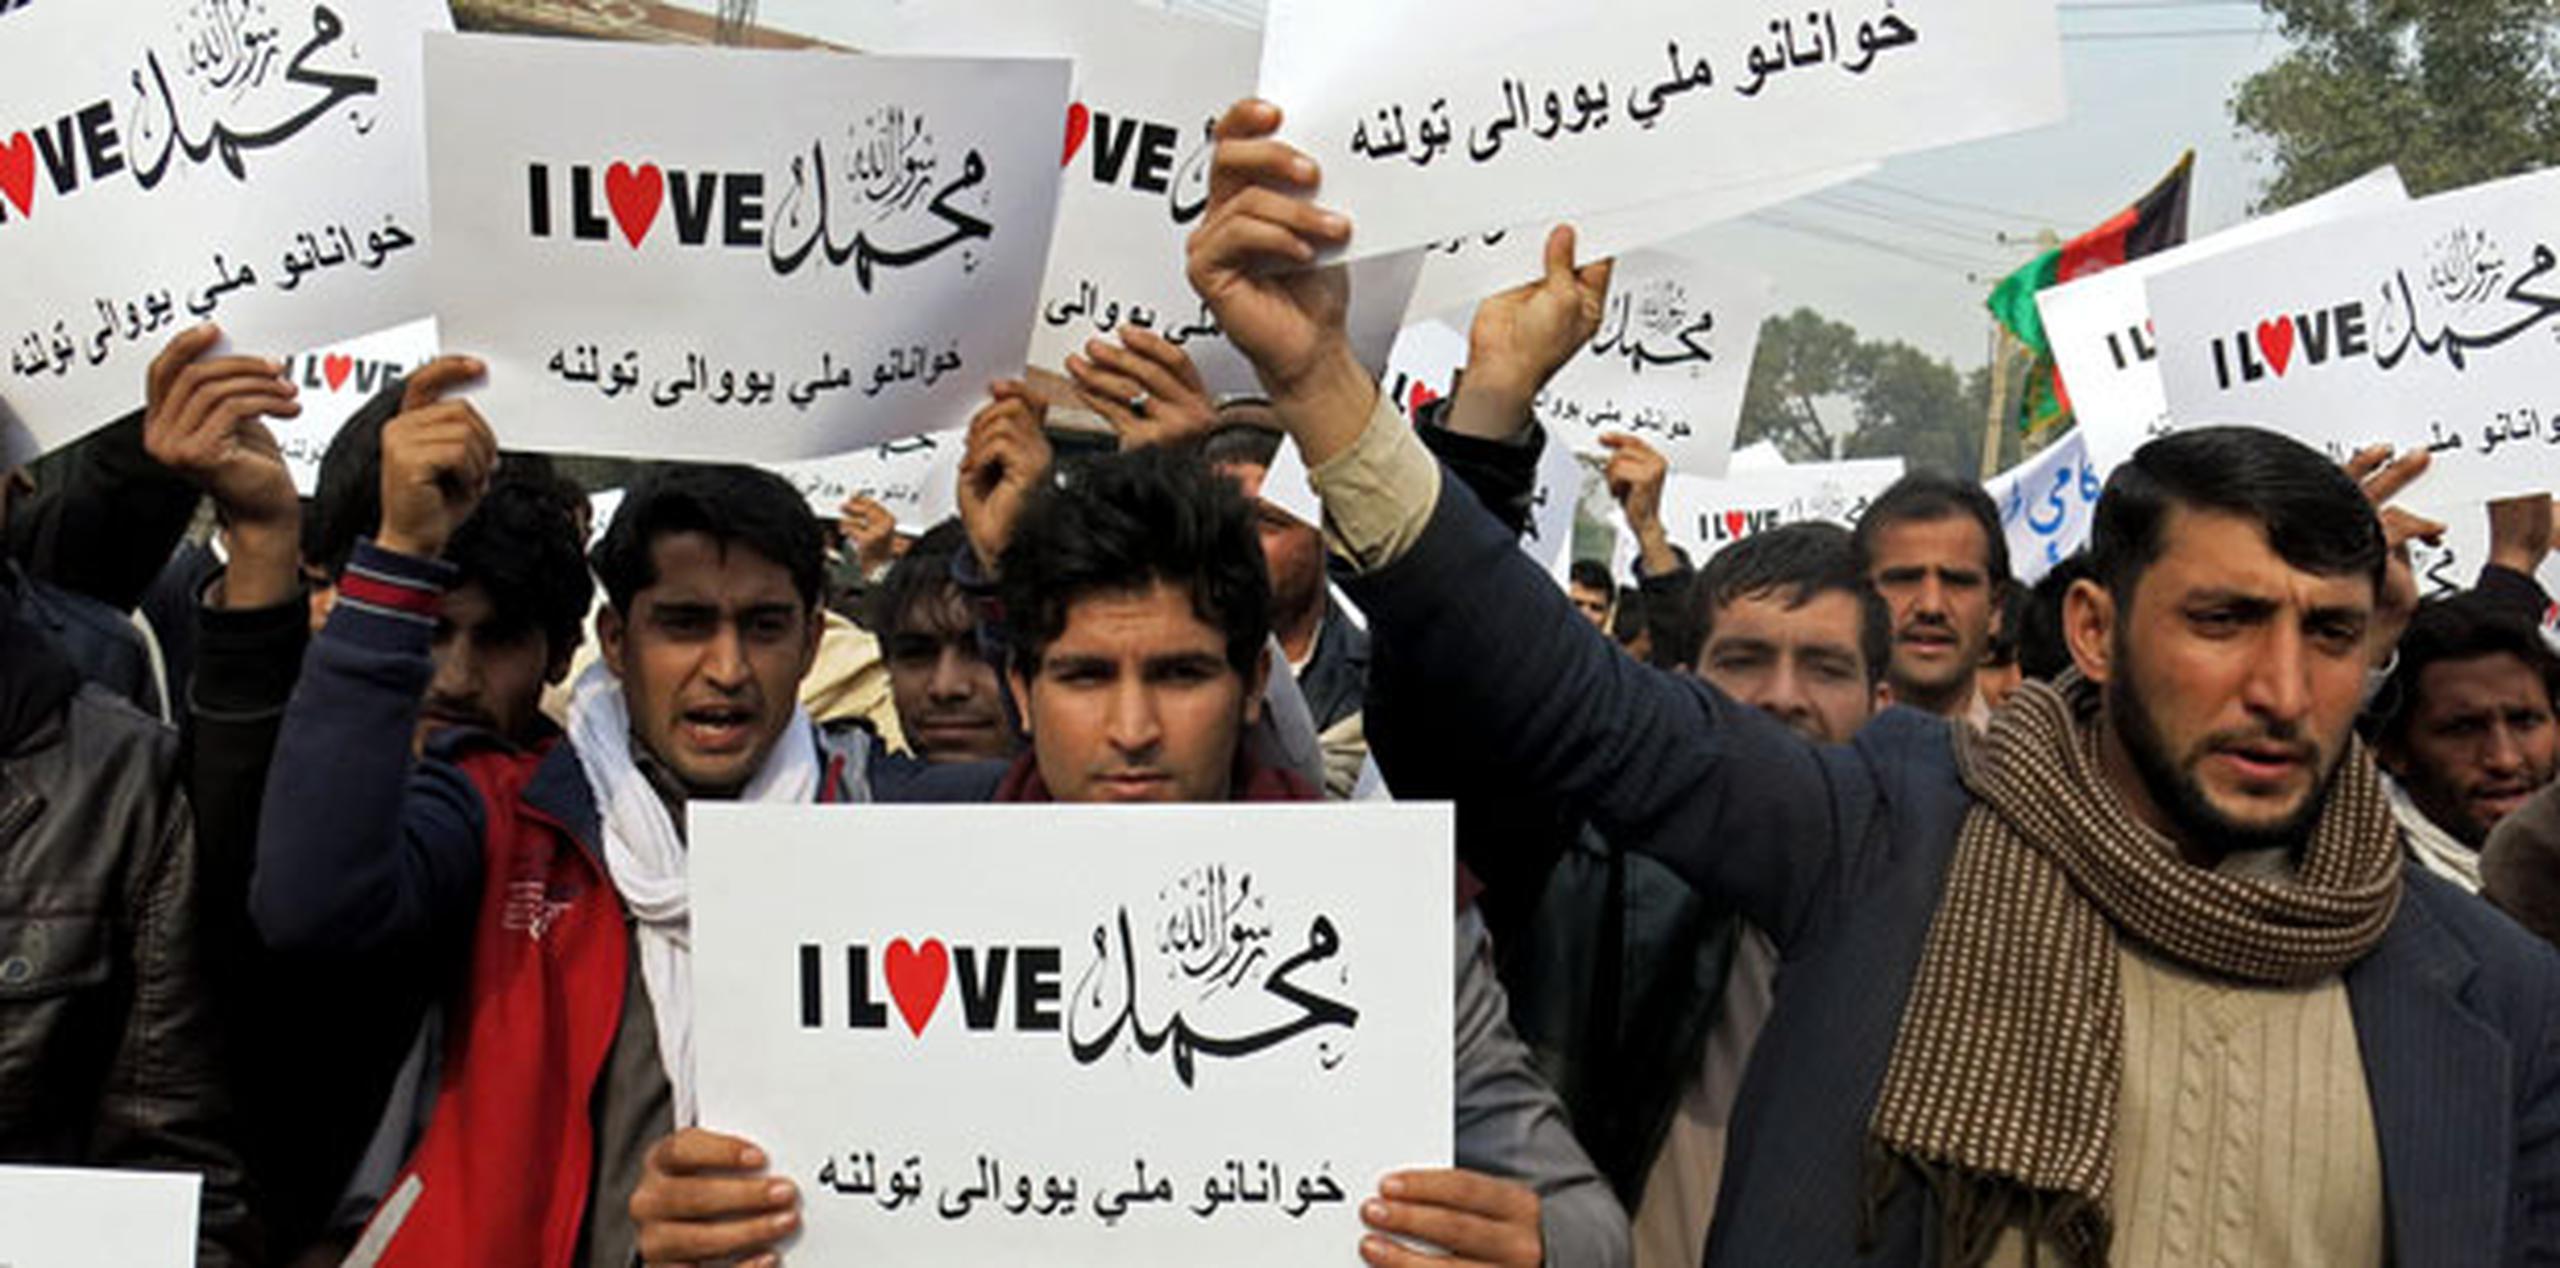 Los manifestantes exigieron el cierre de la embajada de Francia en Kabul y que el gobierno francés se disculpe con los musulmanes. (AP Photo/Mirwais Rahmani)